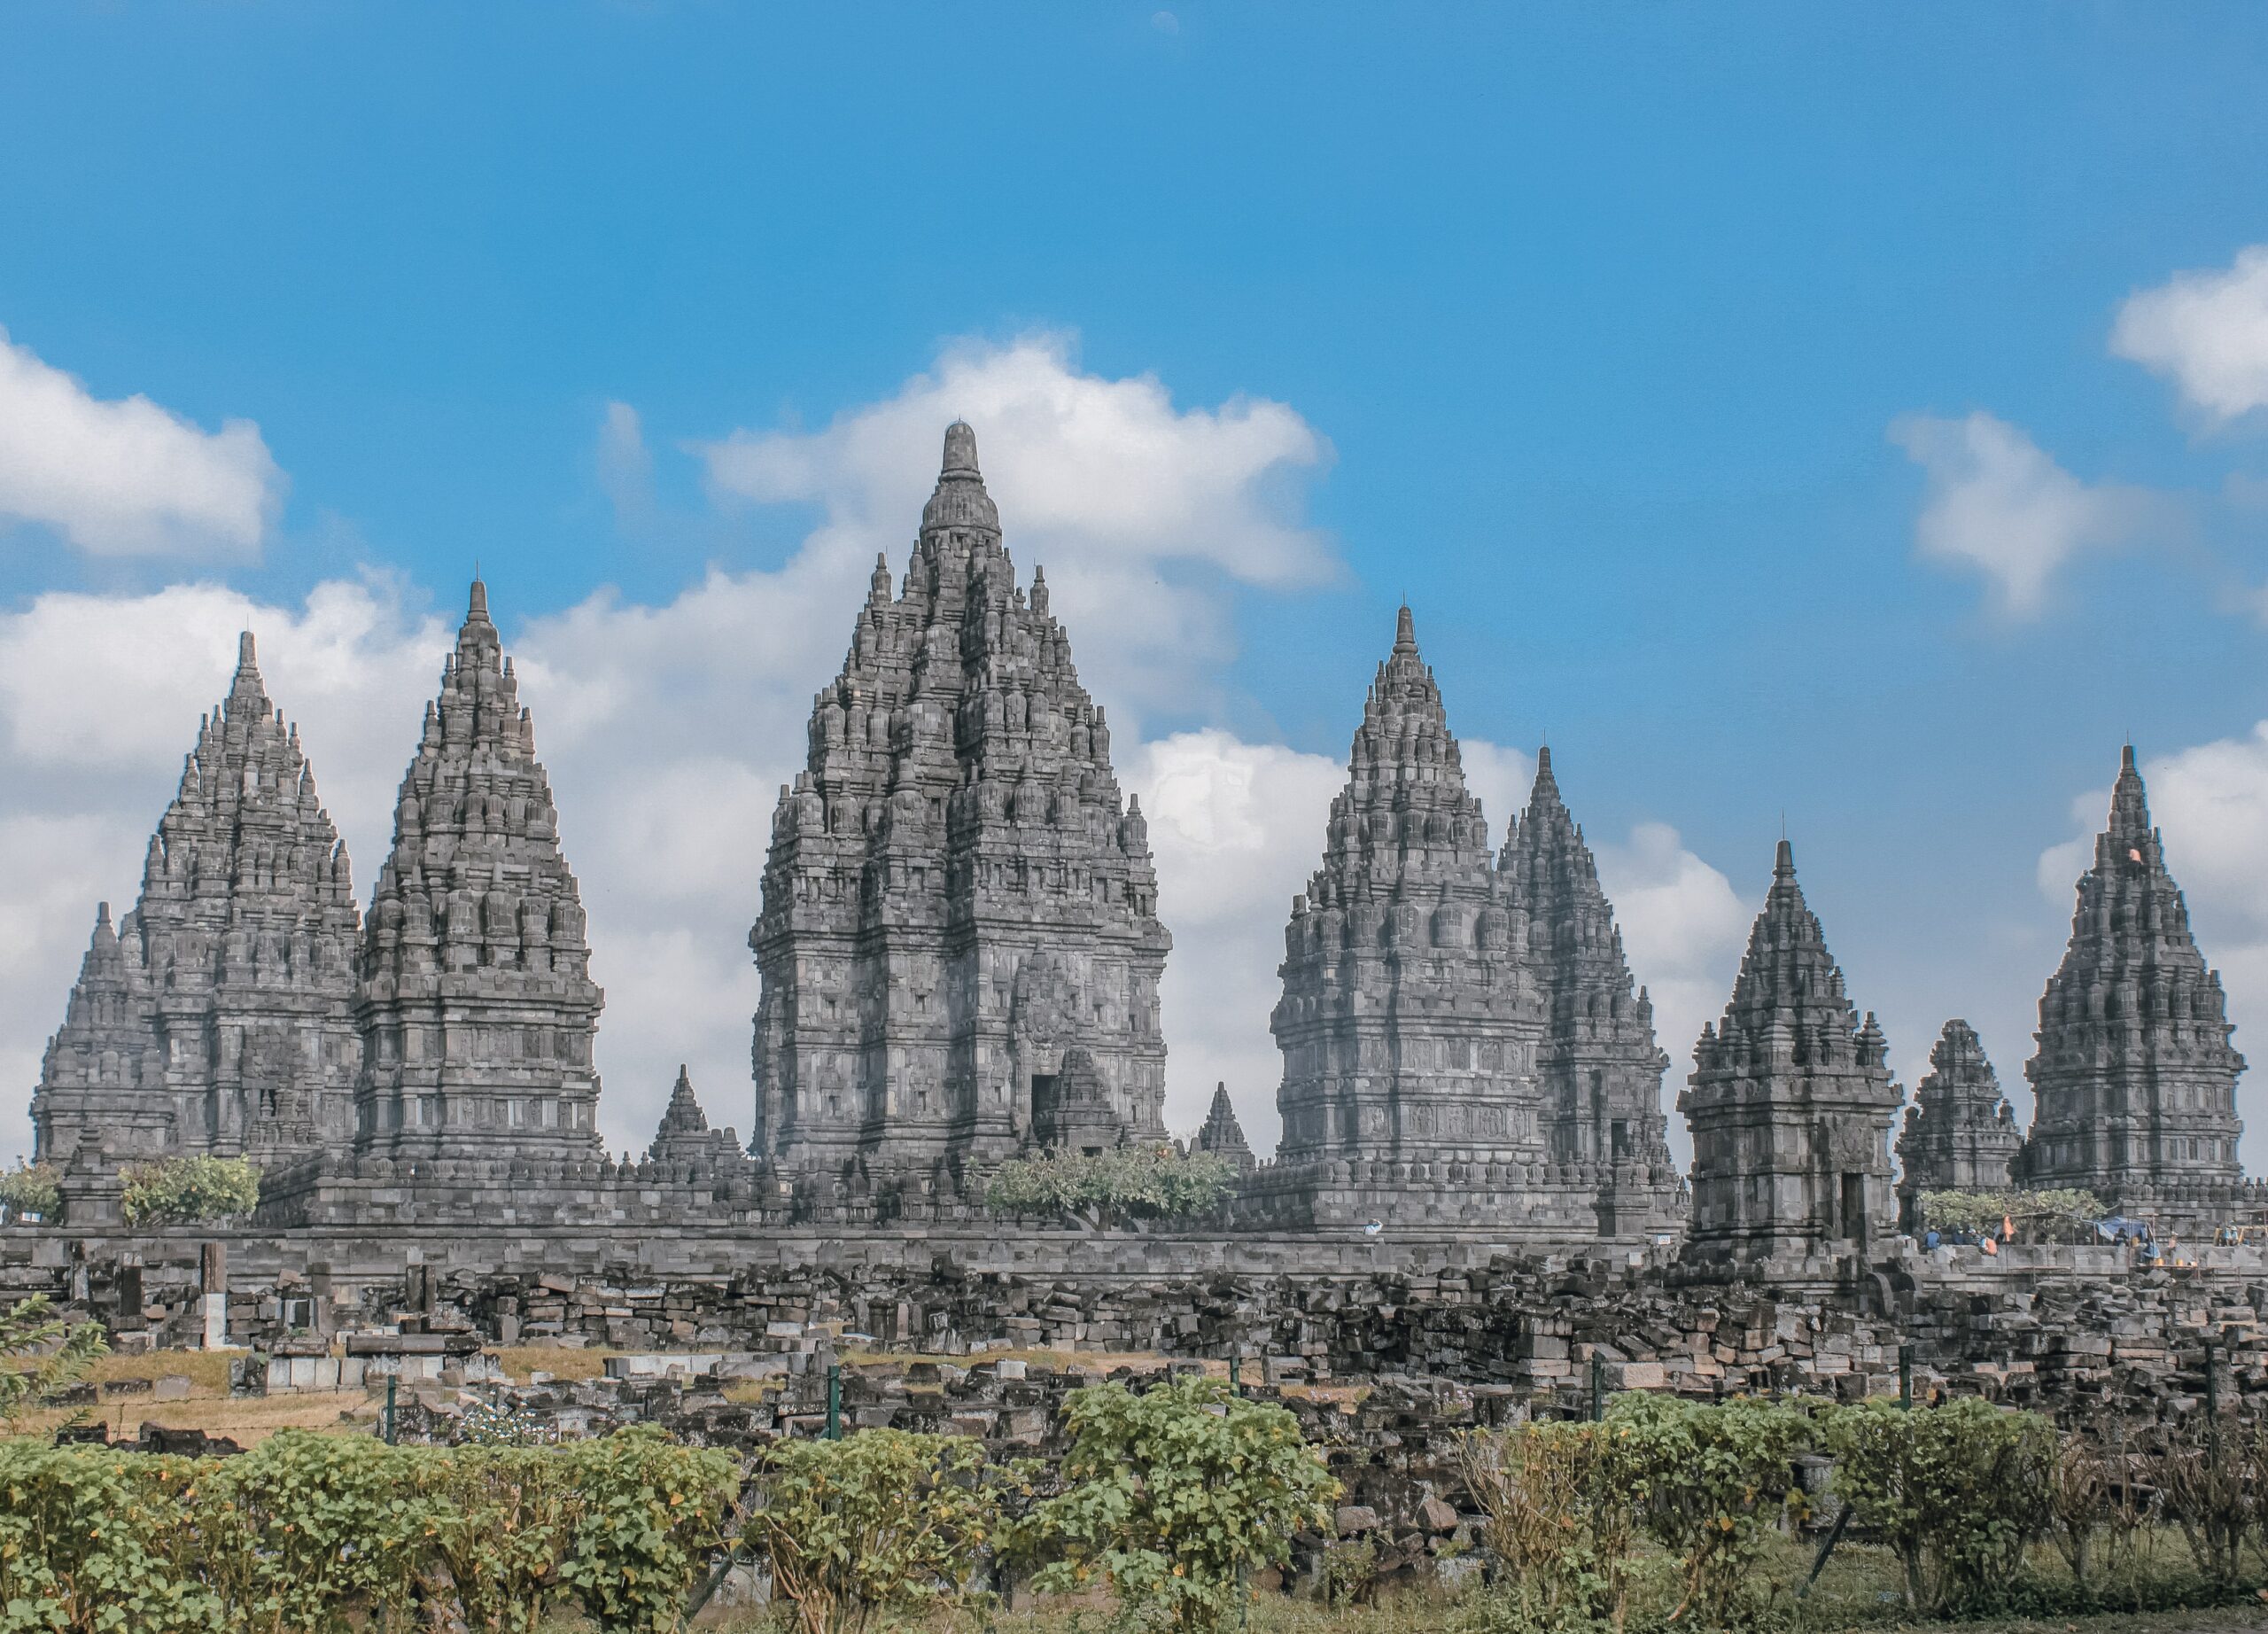 O Templo Prambanan, é um complexo de templos hindus na região especial de Yogyakarta, na Indonésia. Representa seguro viagem Indonésia.